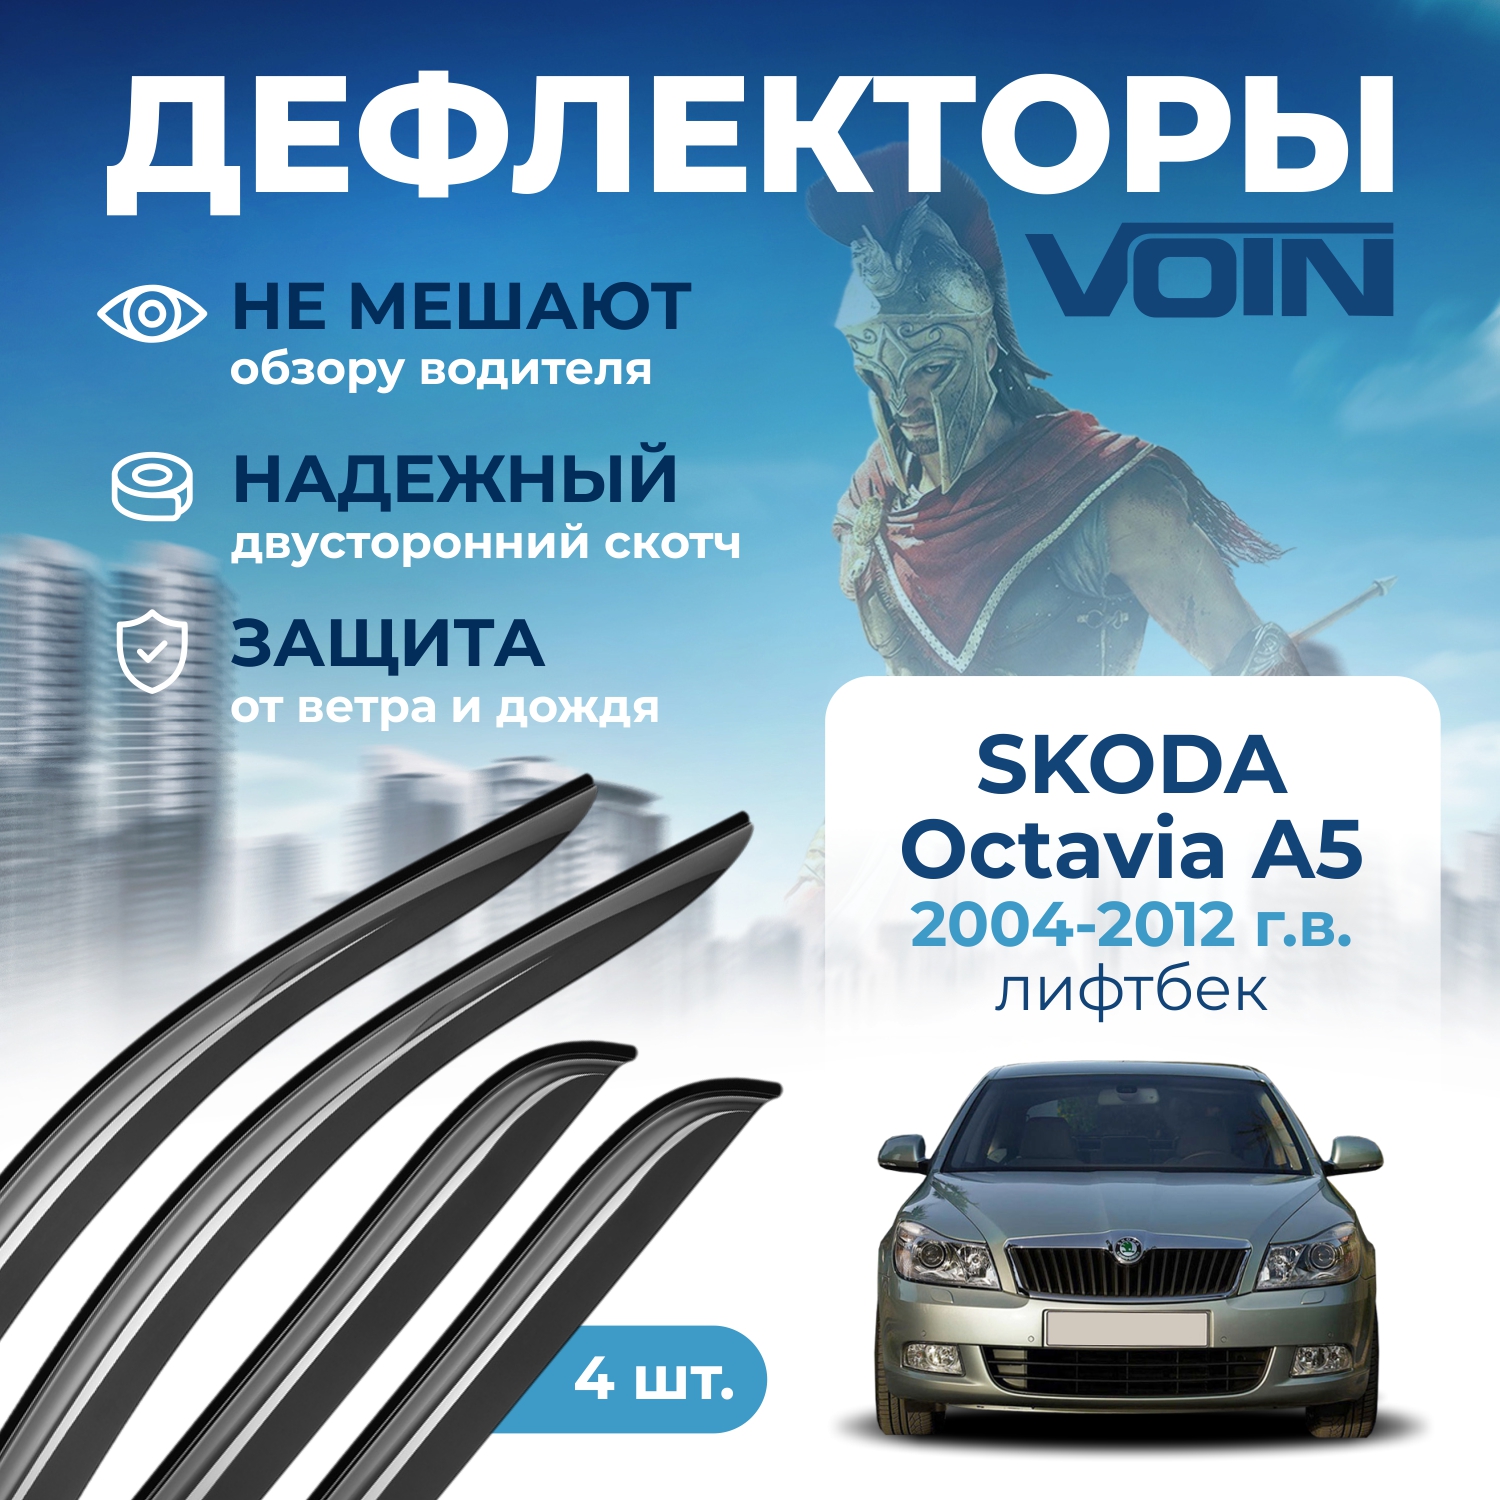 Дефлекторы боковых окон Voin на авто Skoda Octavia A5 2004-2012, лифтбек, накладные, 4 шт.